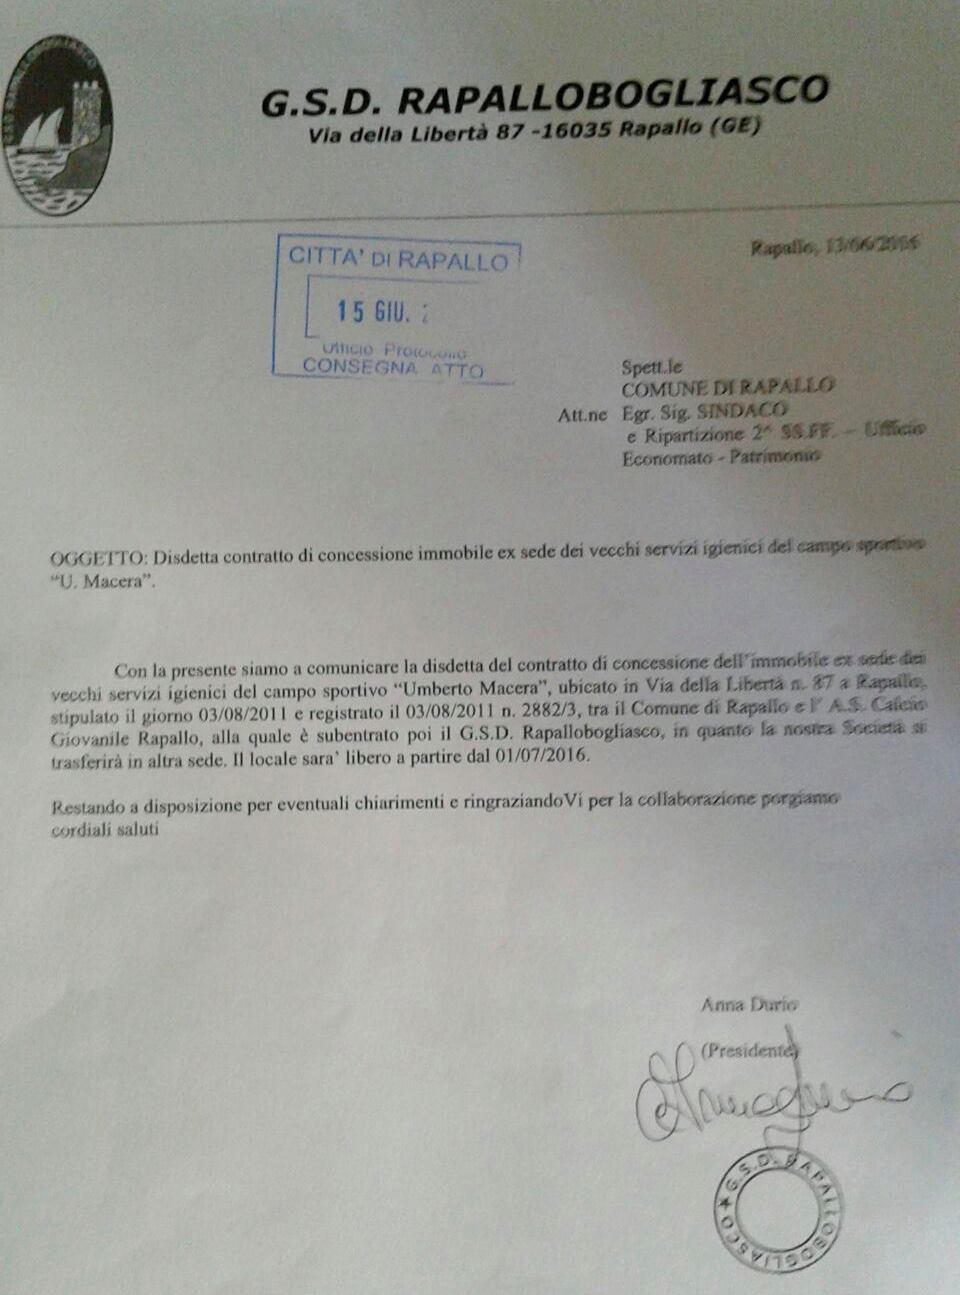 La lettera del Rapallo Bogliasco al Comune di Rapallo